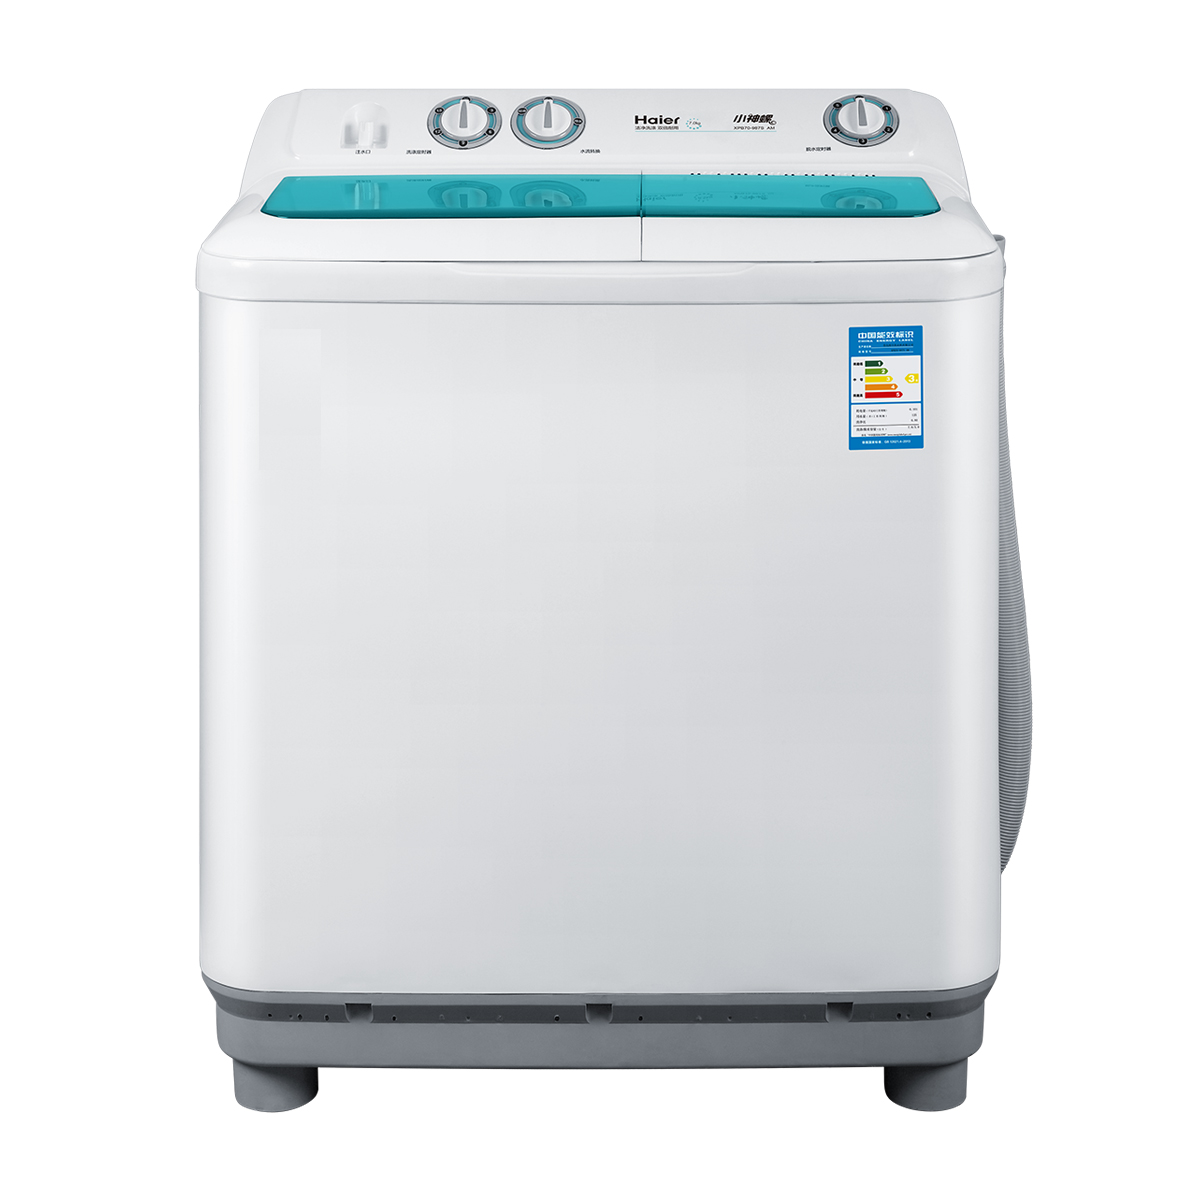 海尔Haier洗衣机 XPB70-987S(AM) 说明书